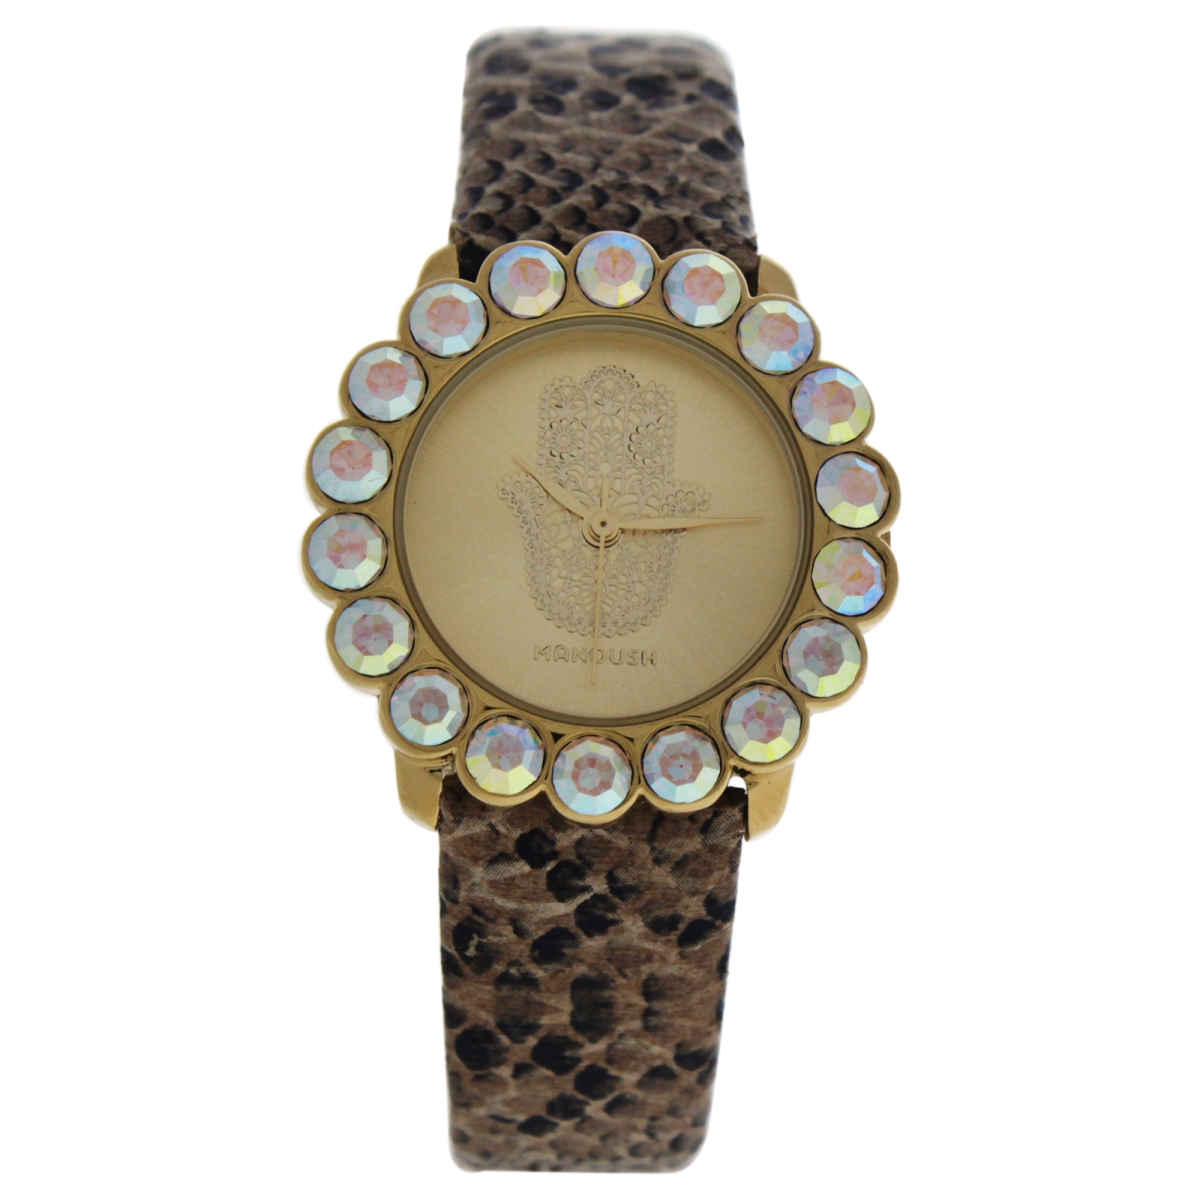 W-wat-1504 Mshscgl Scarlett - Leather Strash Watch For Women, Gold Crocodile